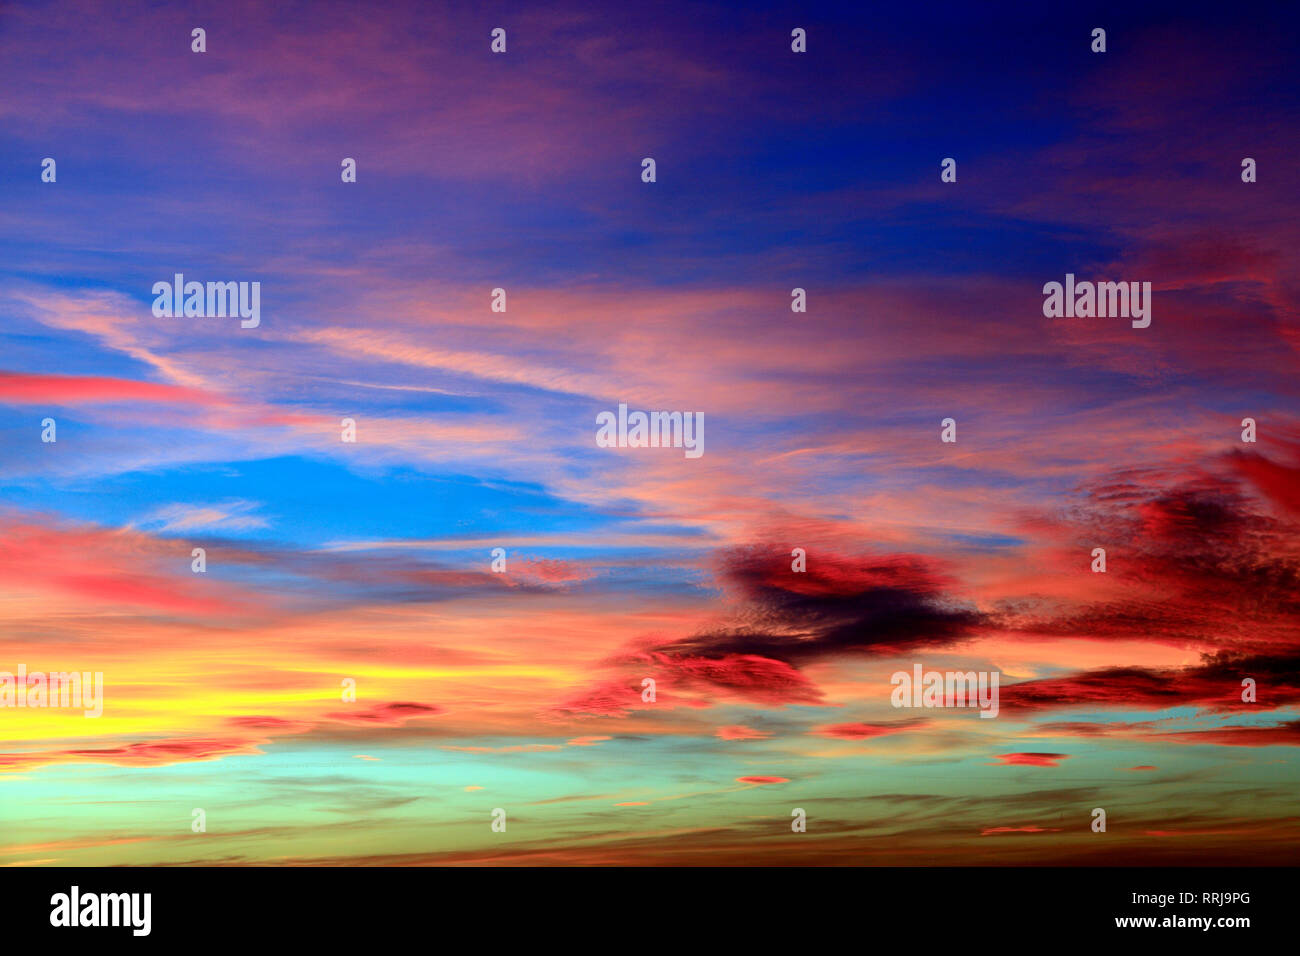 Ciel, beaucoup de couleurs, multicolore, rouge, rose, orange, bleu foncé, bleu clair, nuage, nuages, après le coucher du soleil, la formation Banque D'Images